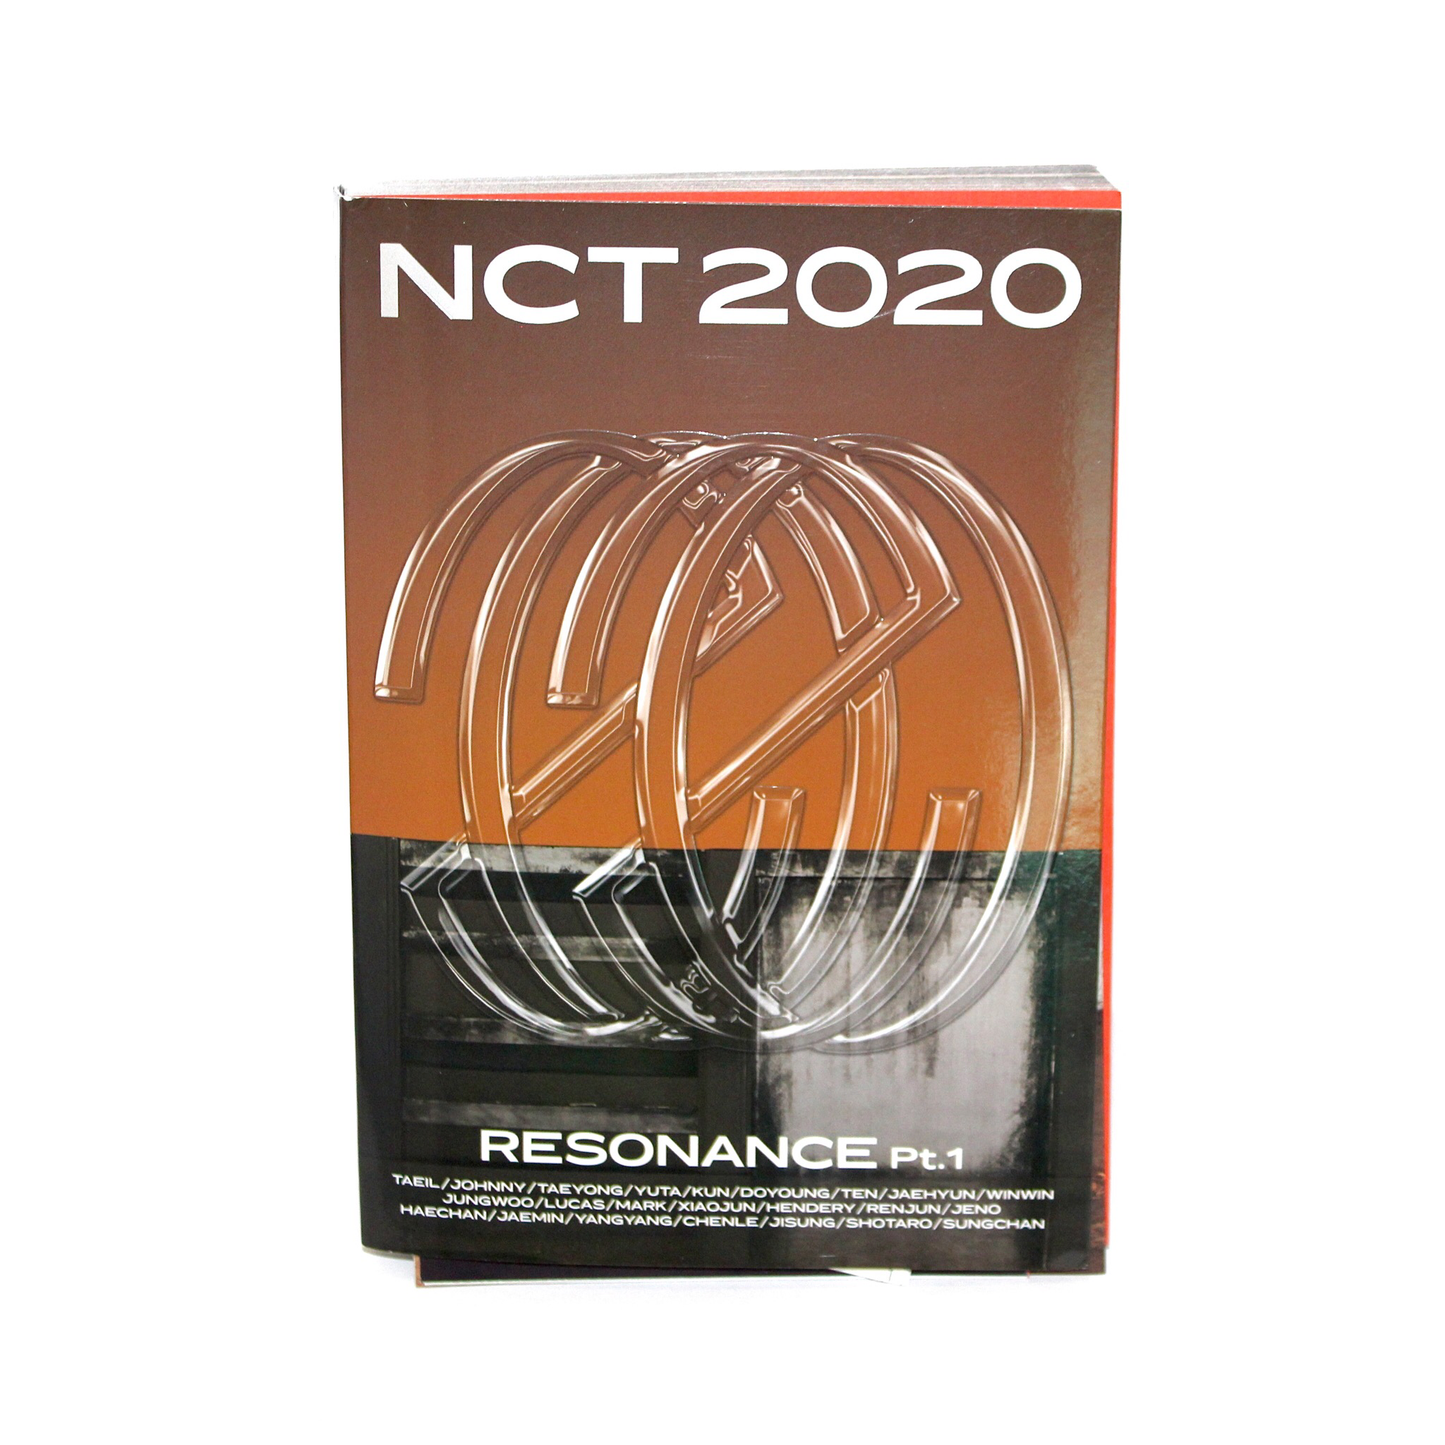 Segundo álbum de NCT: NCT 2020 Resonance Pt. 1 | La versión del futuro.